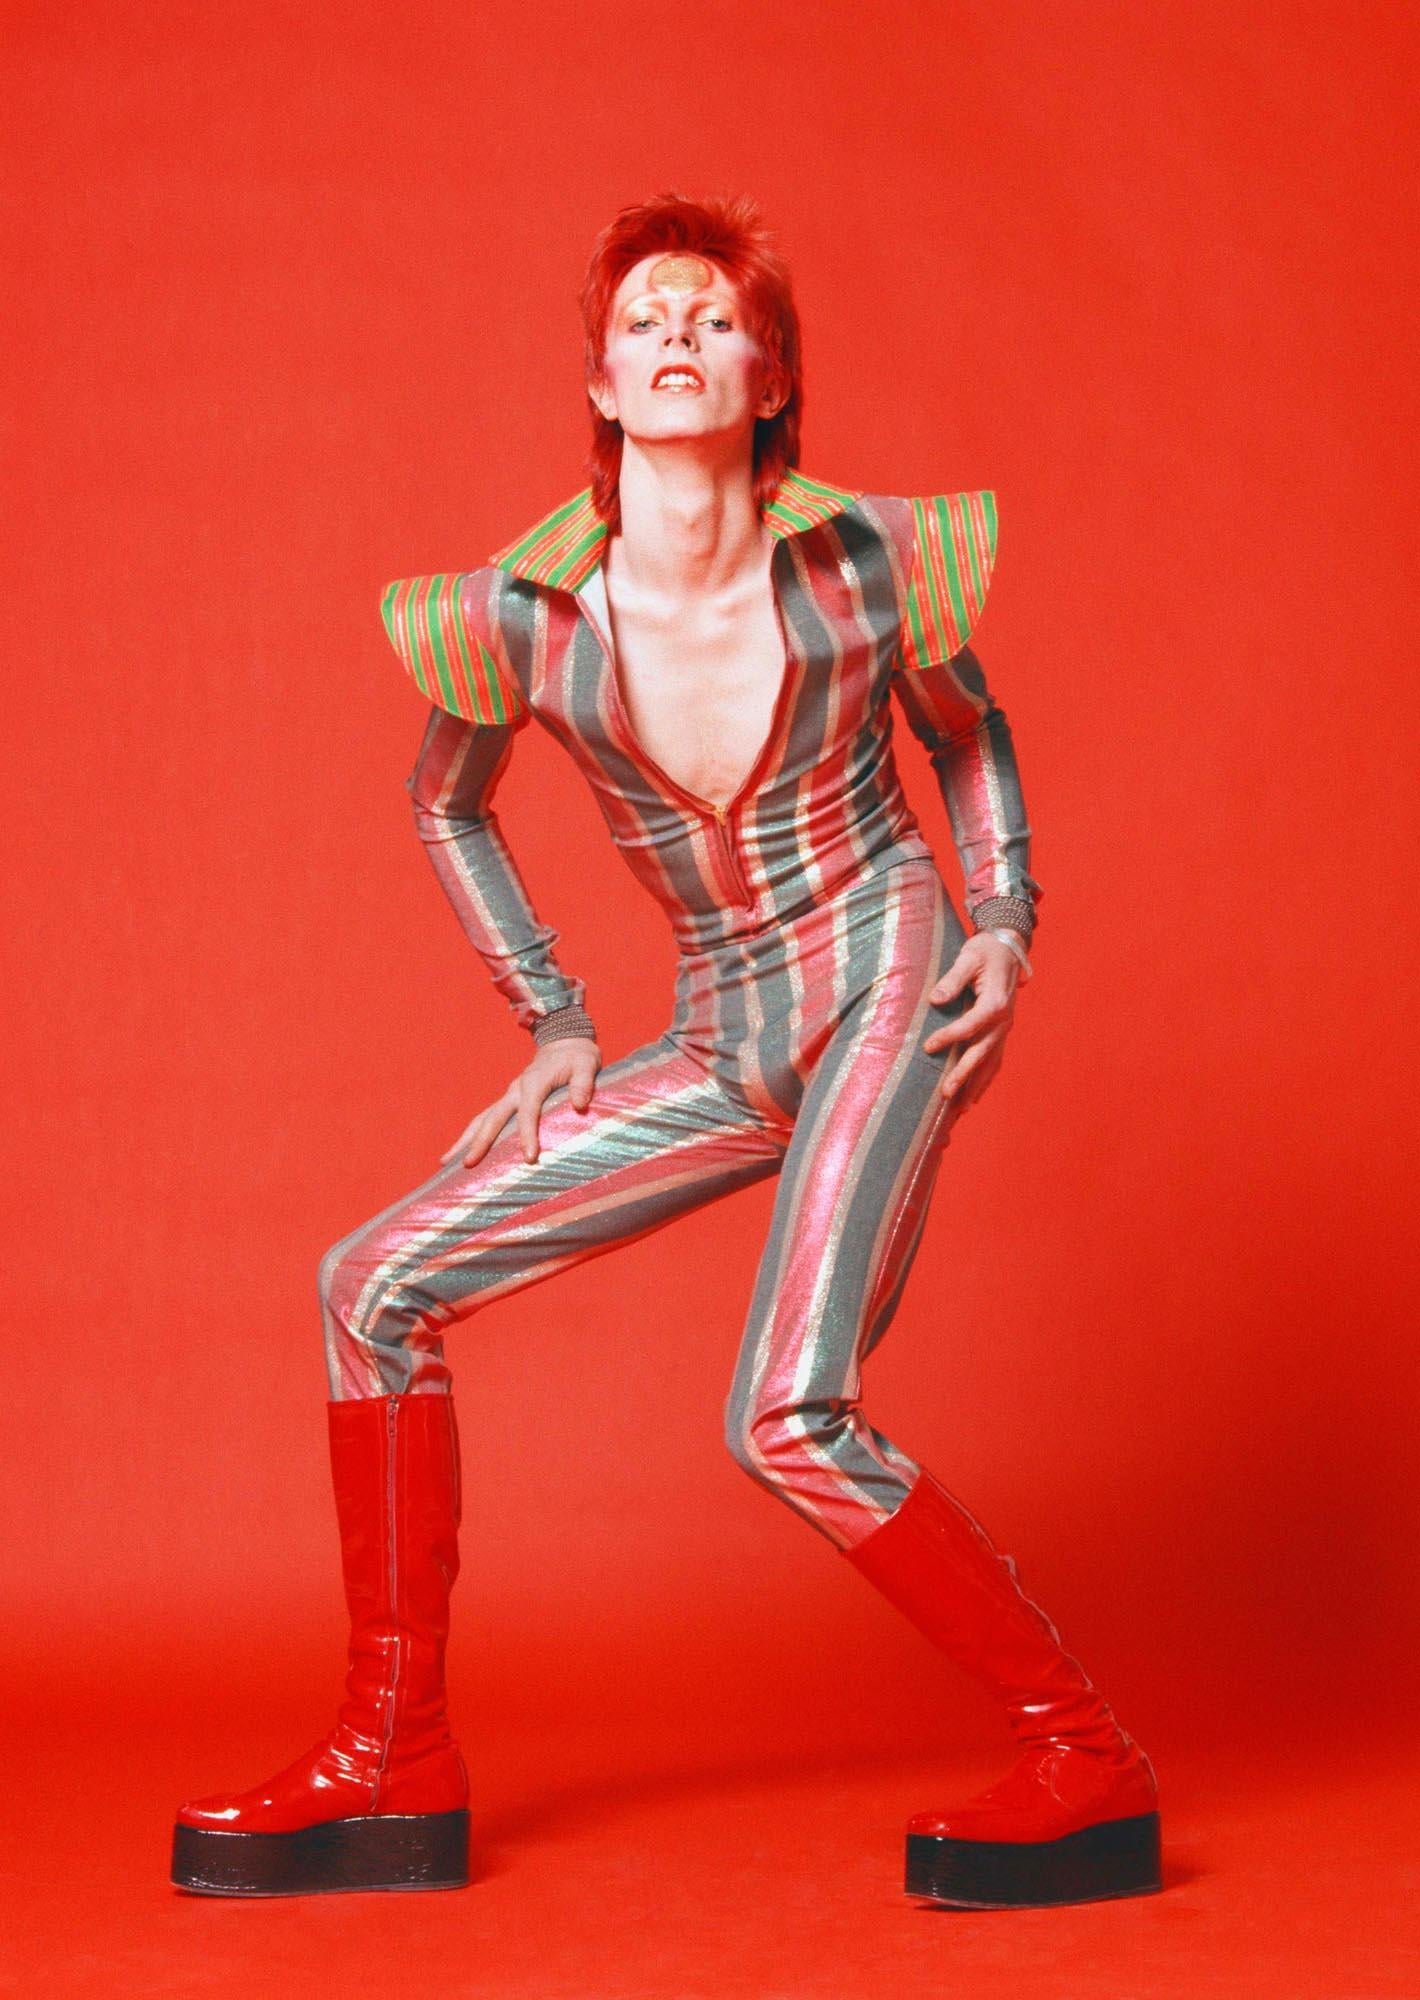 Masayoshi Sukita Color Photograph - David Bowie "He'd Blow Our Minds" by Sukita